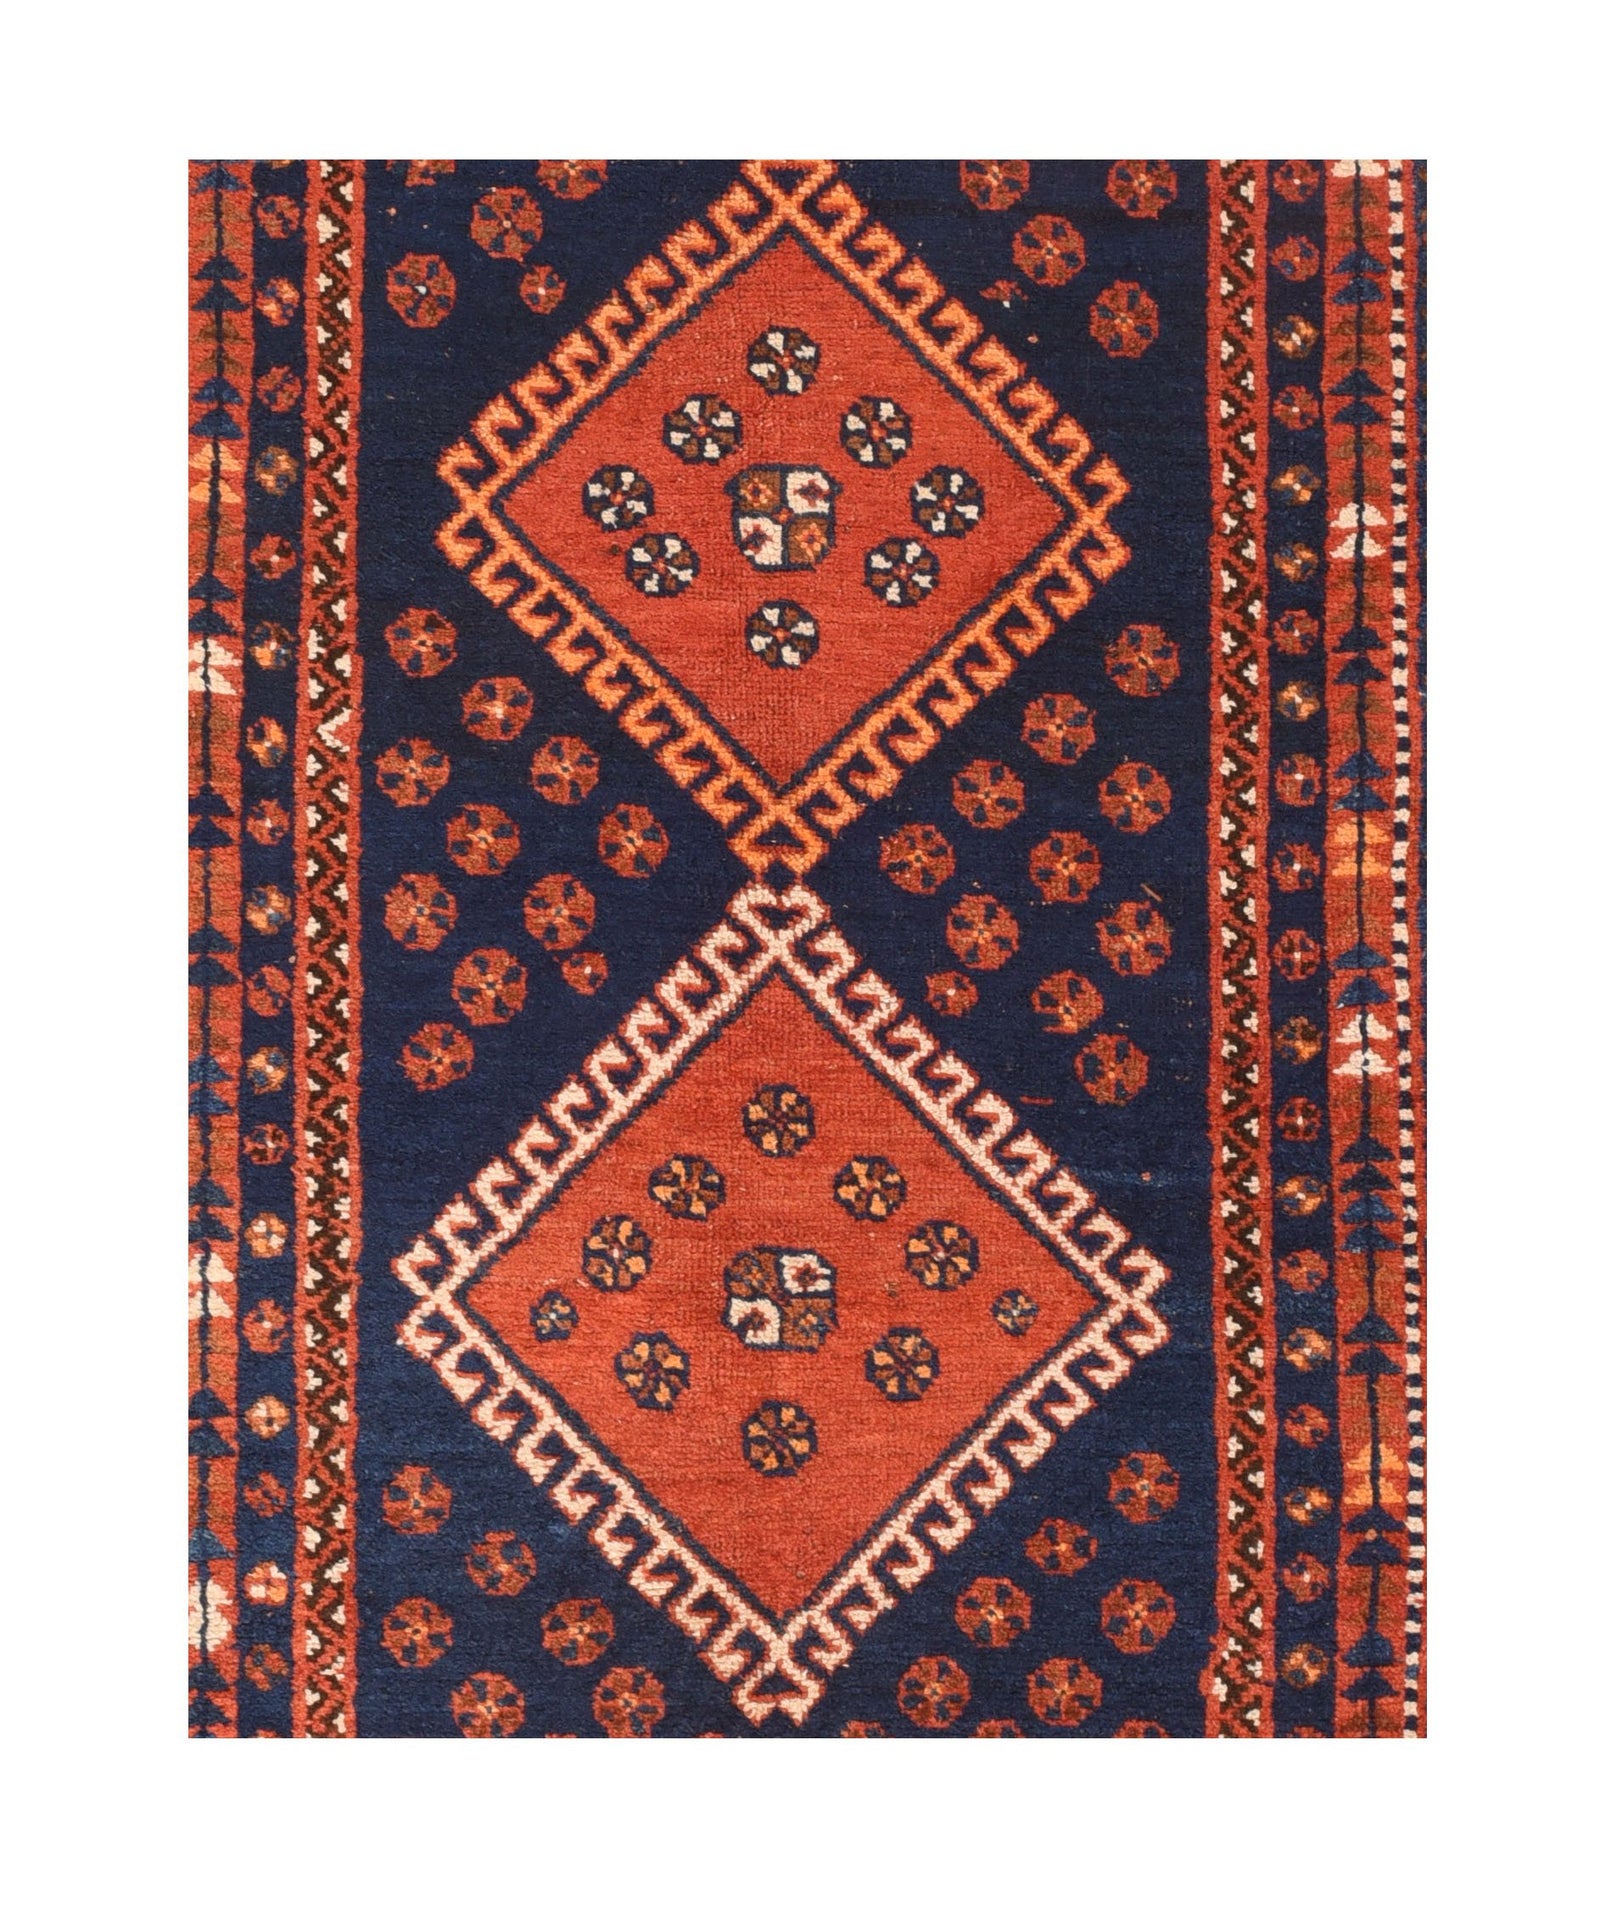 Fine Antique Persian Ghasghai Tribal Rug